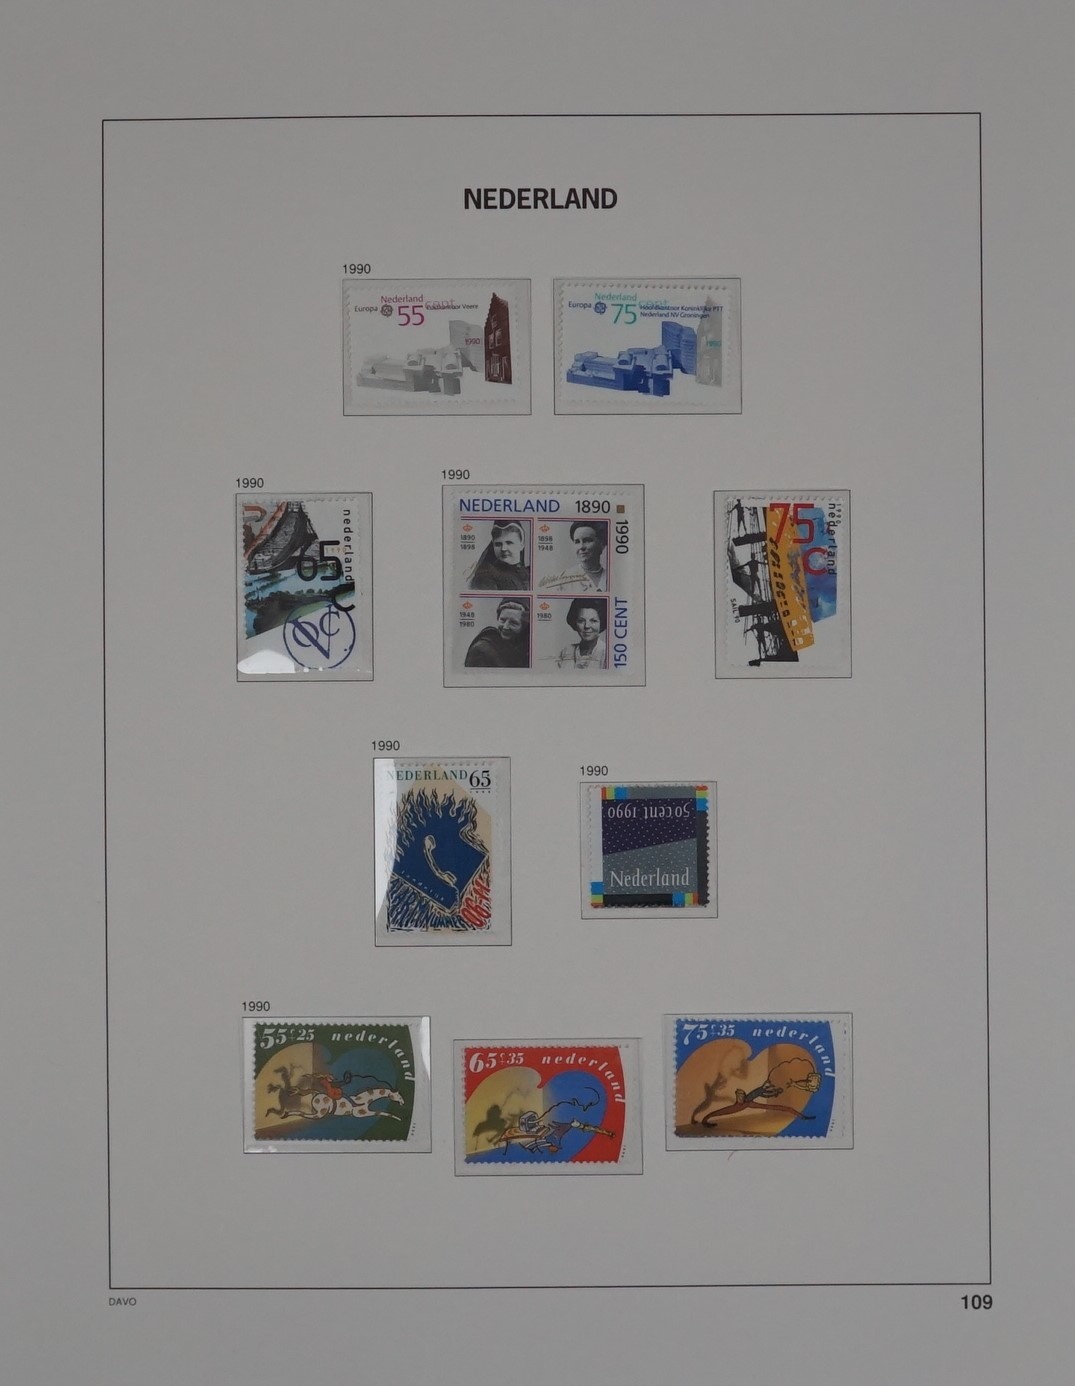 Davo de luxe album, Nederland deel IV - Stamps 4 Everyone